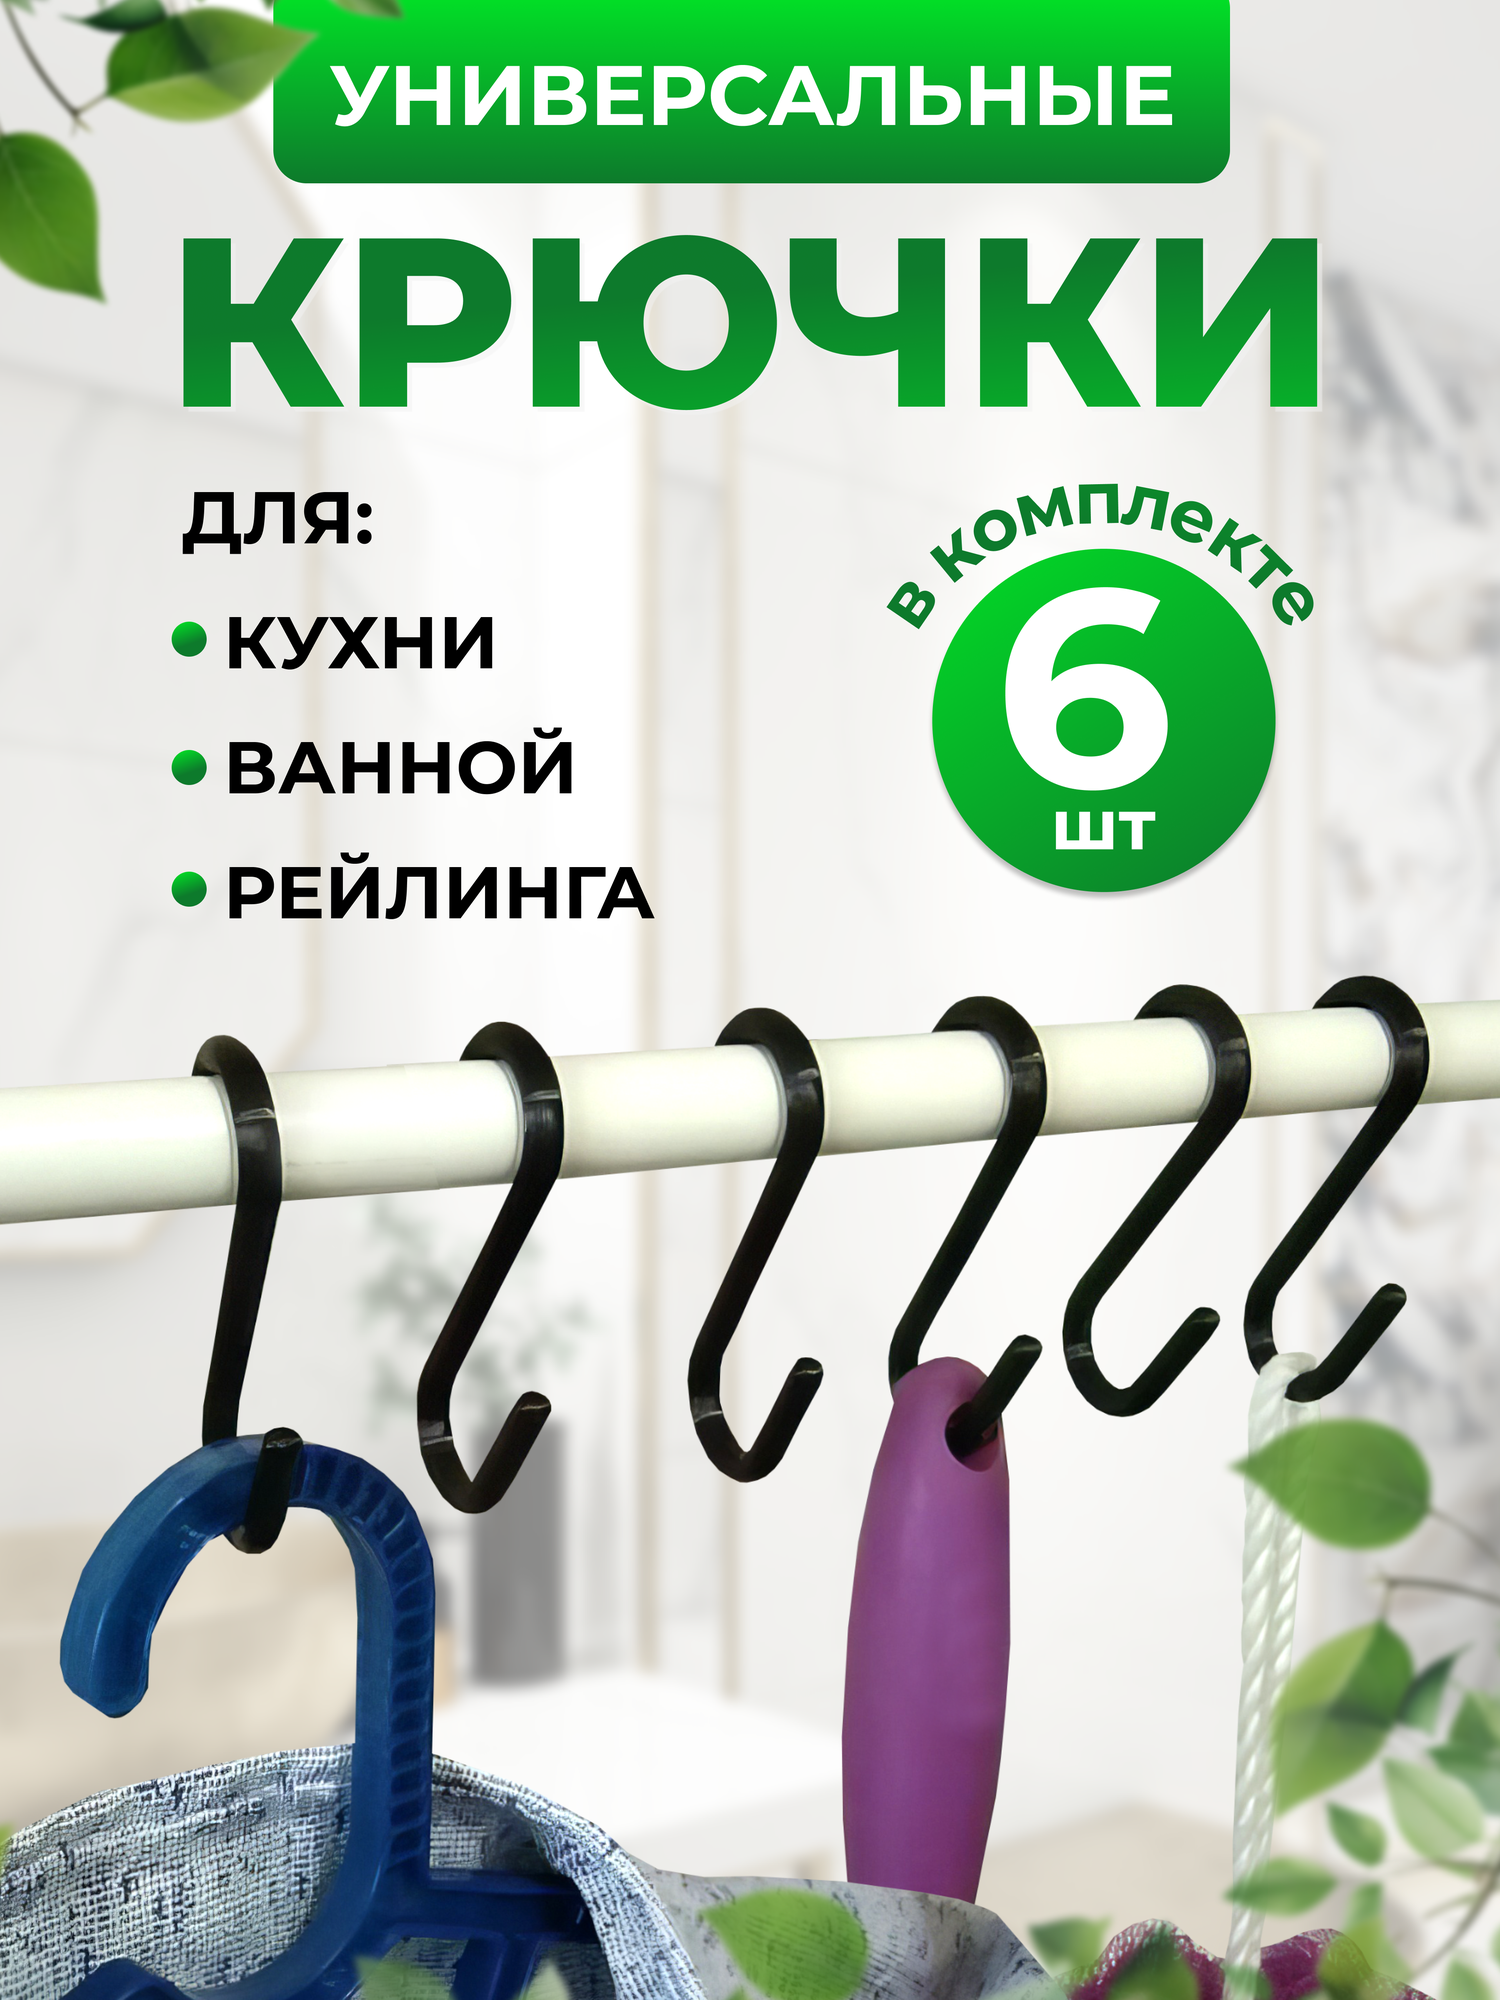 Крючки держатели для аксессуаров на рейлинги, шкафа, порядок в ванной комнате и кухни, 6шт